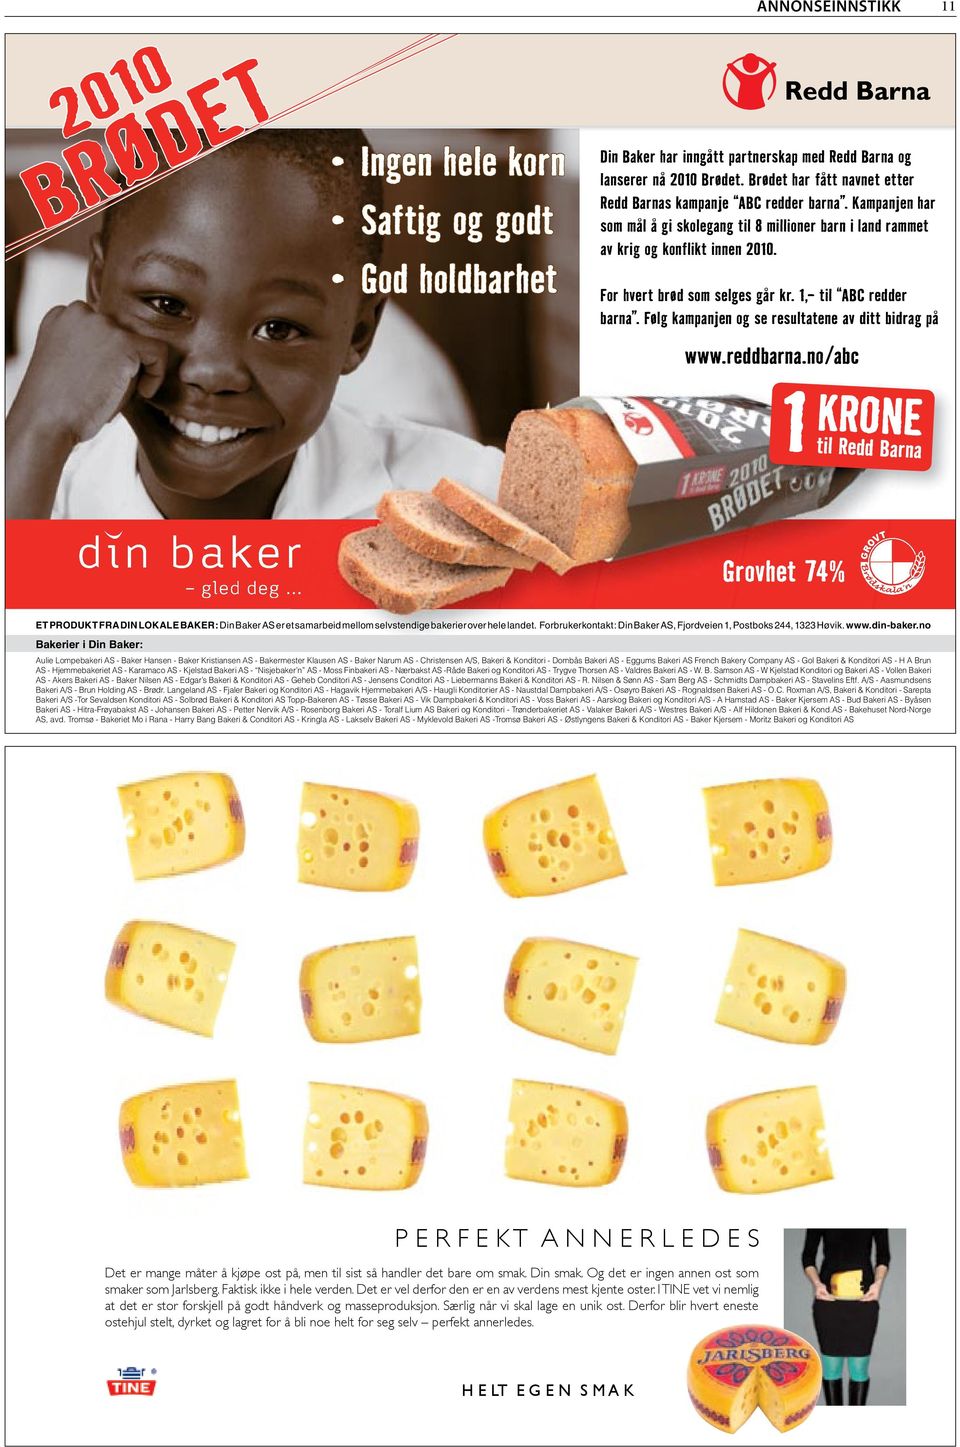 For hvert brød som selges går kr. 1,- til ABC redder barna. Følg kampanjen og se resultatene av ditt bidrag på www.reddbarna.